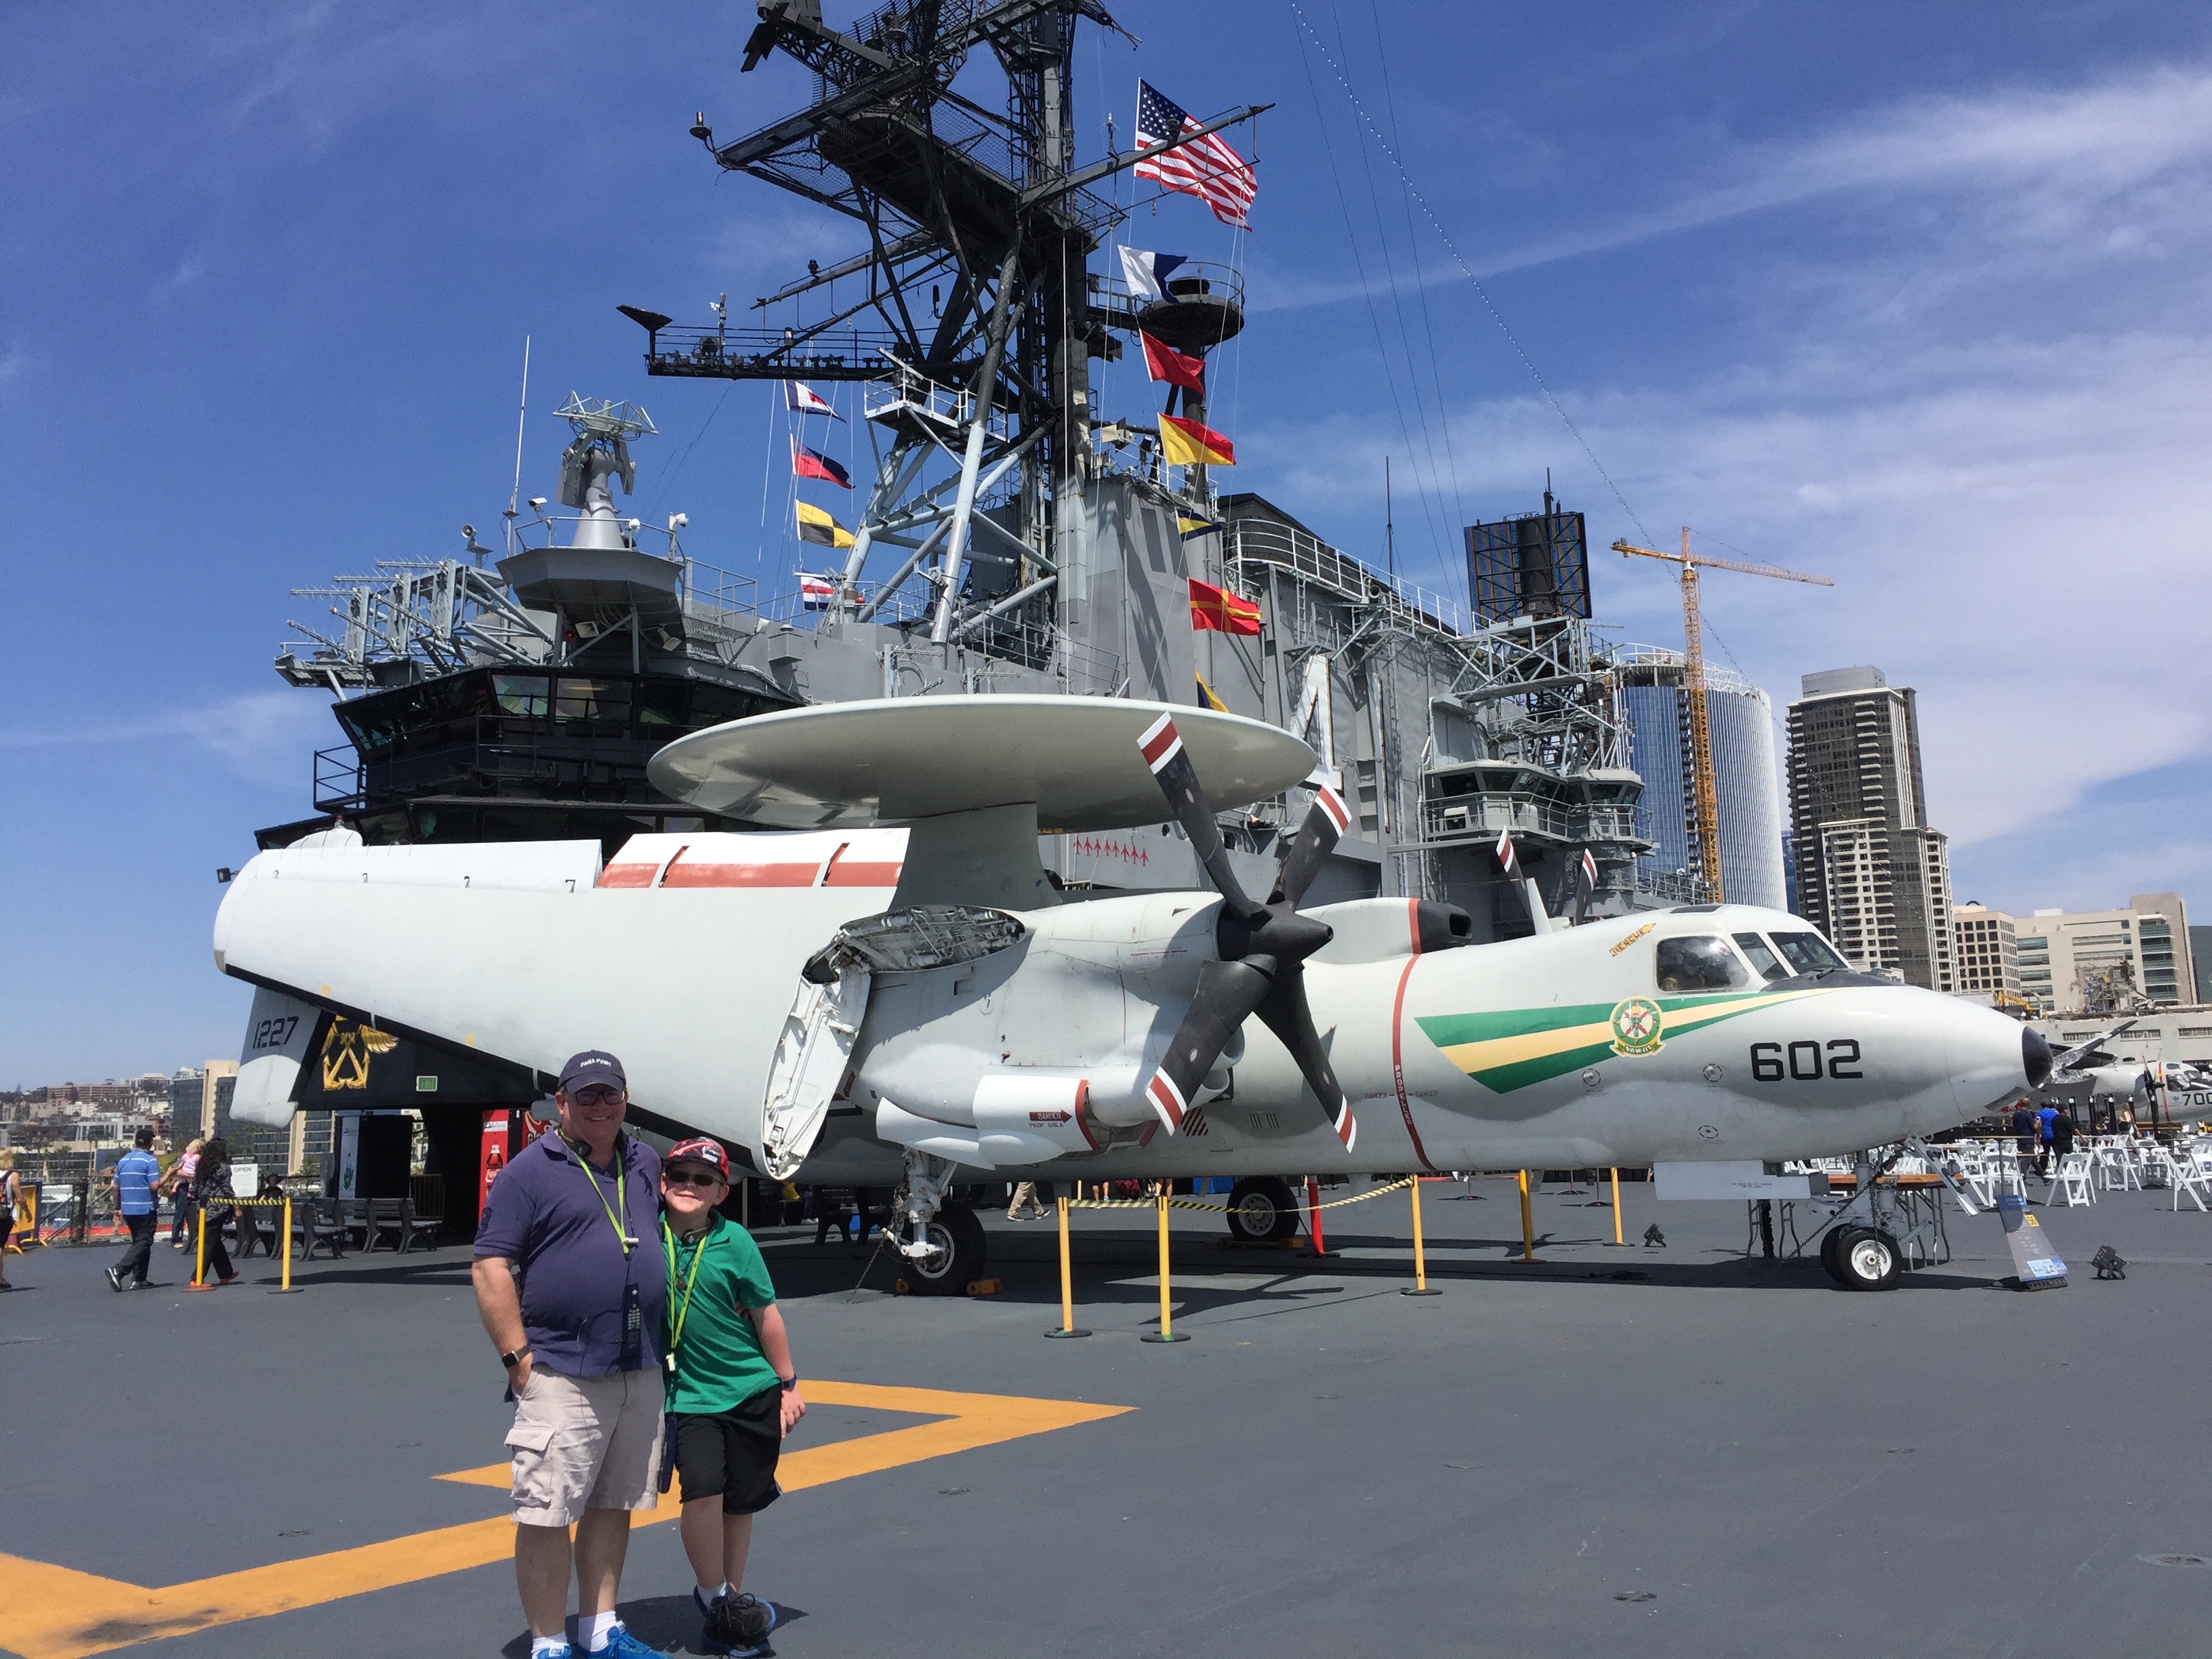 Van Tassel family visit to the USS Midway in San Diego with Resilience Expert Elizabeth Van Tassel